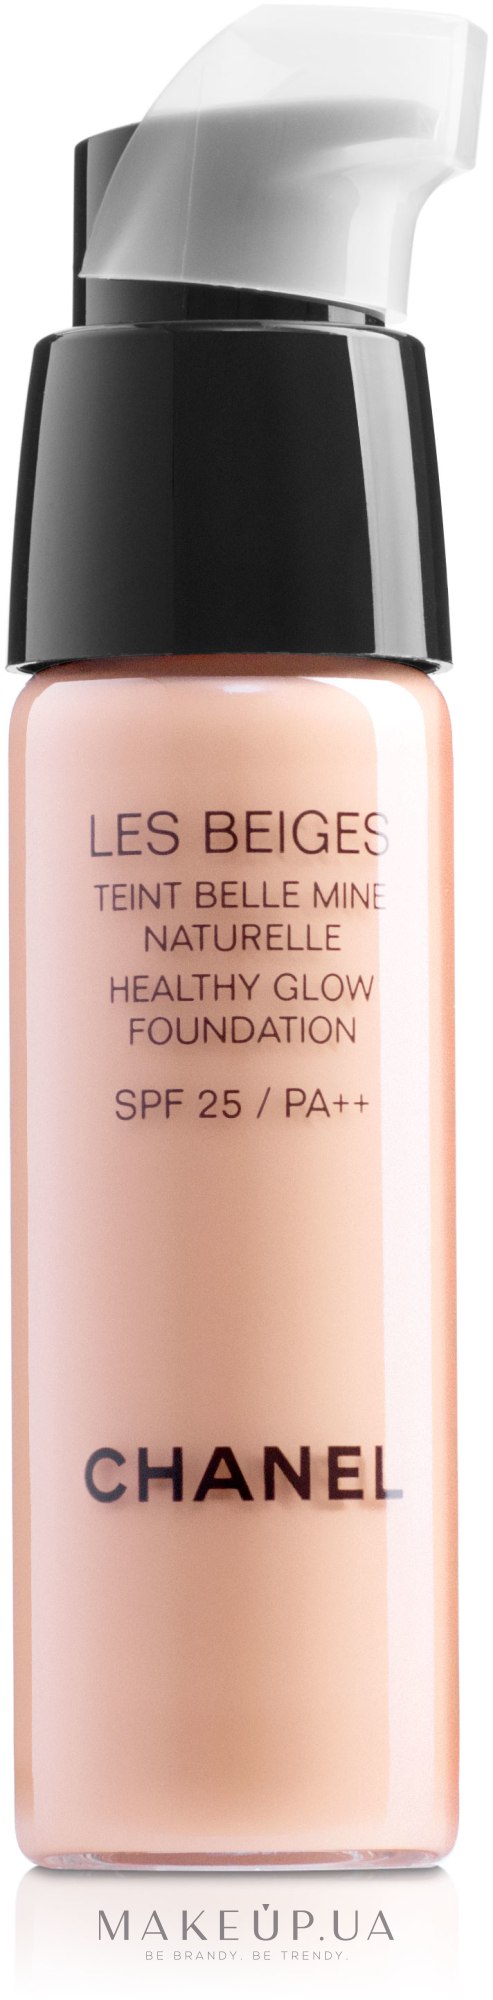 Chanel Les Beiges Healthy Glow Foundation SPF 25 PA++ (тестер) - Тональный  флюид: купить по лучшей цене в Украине